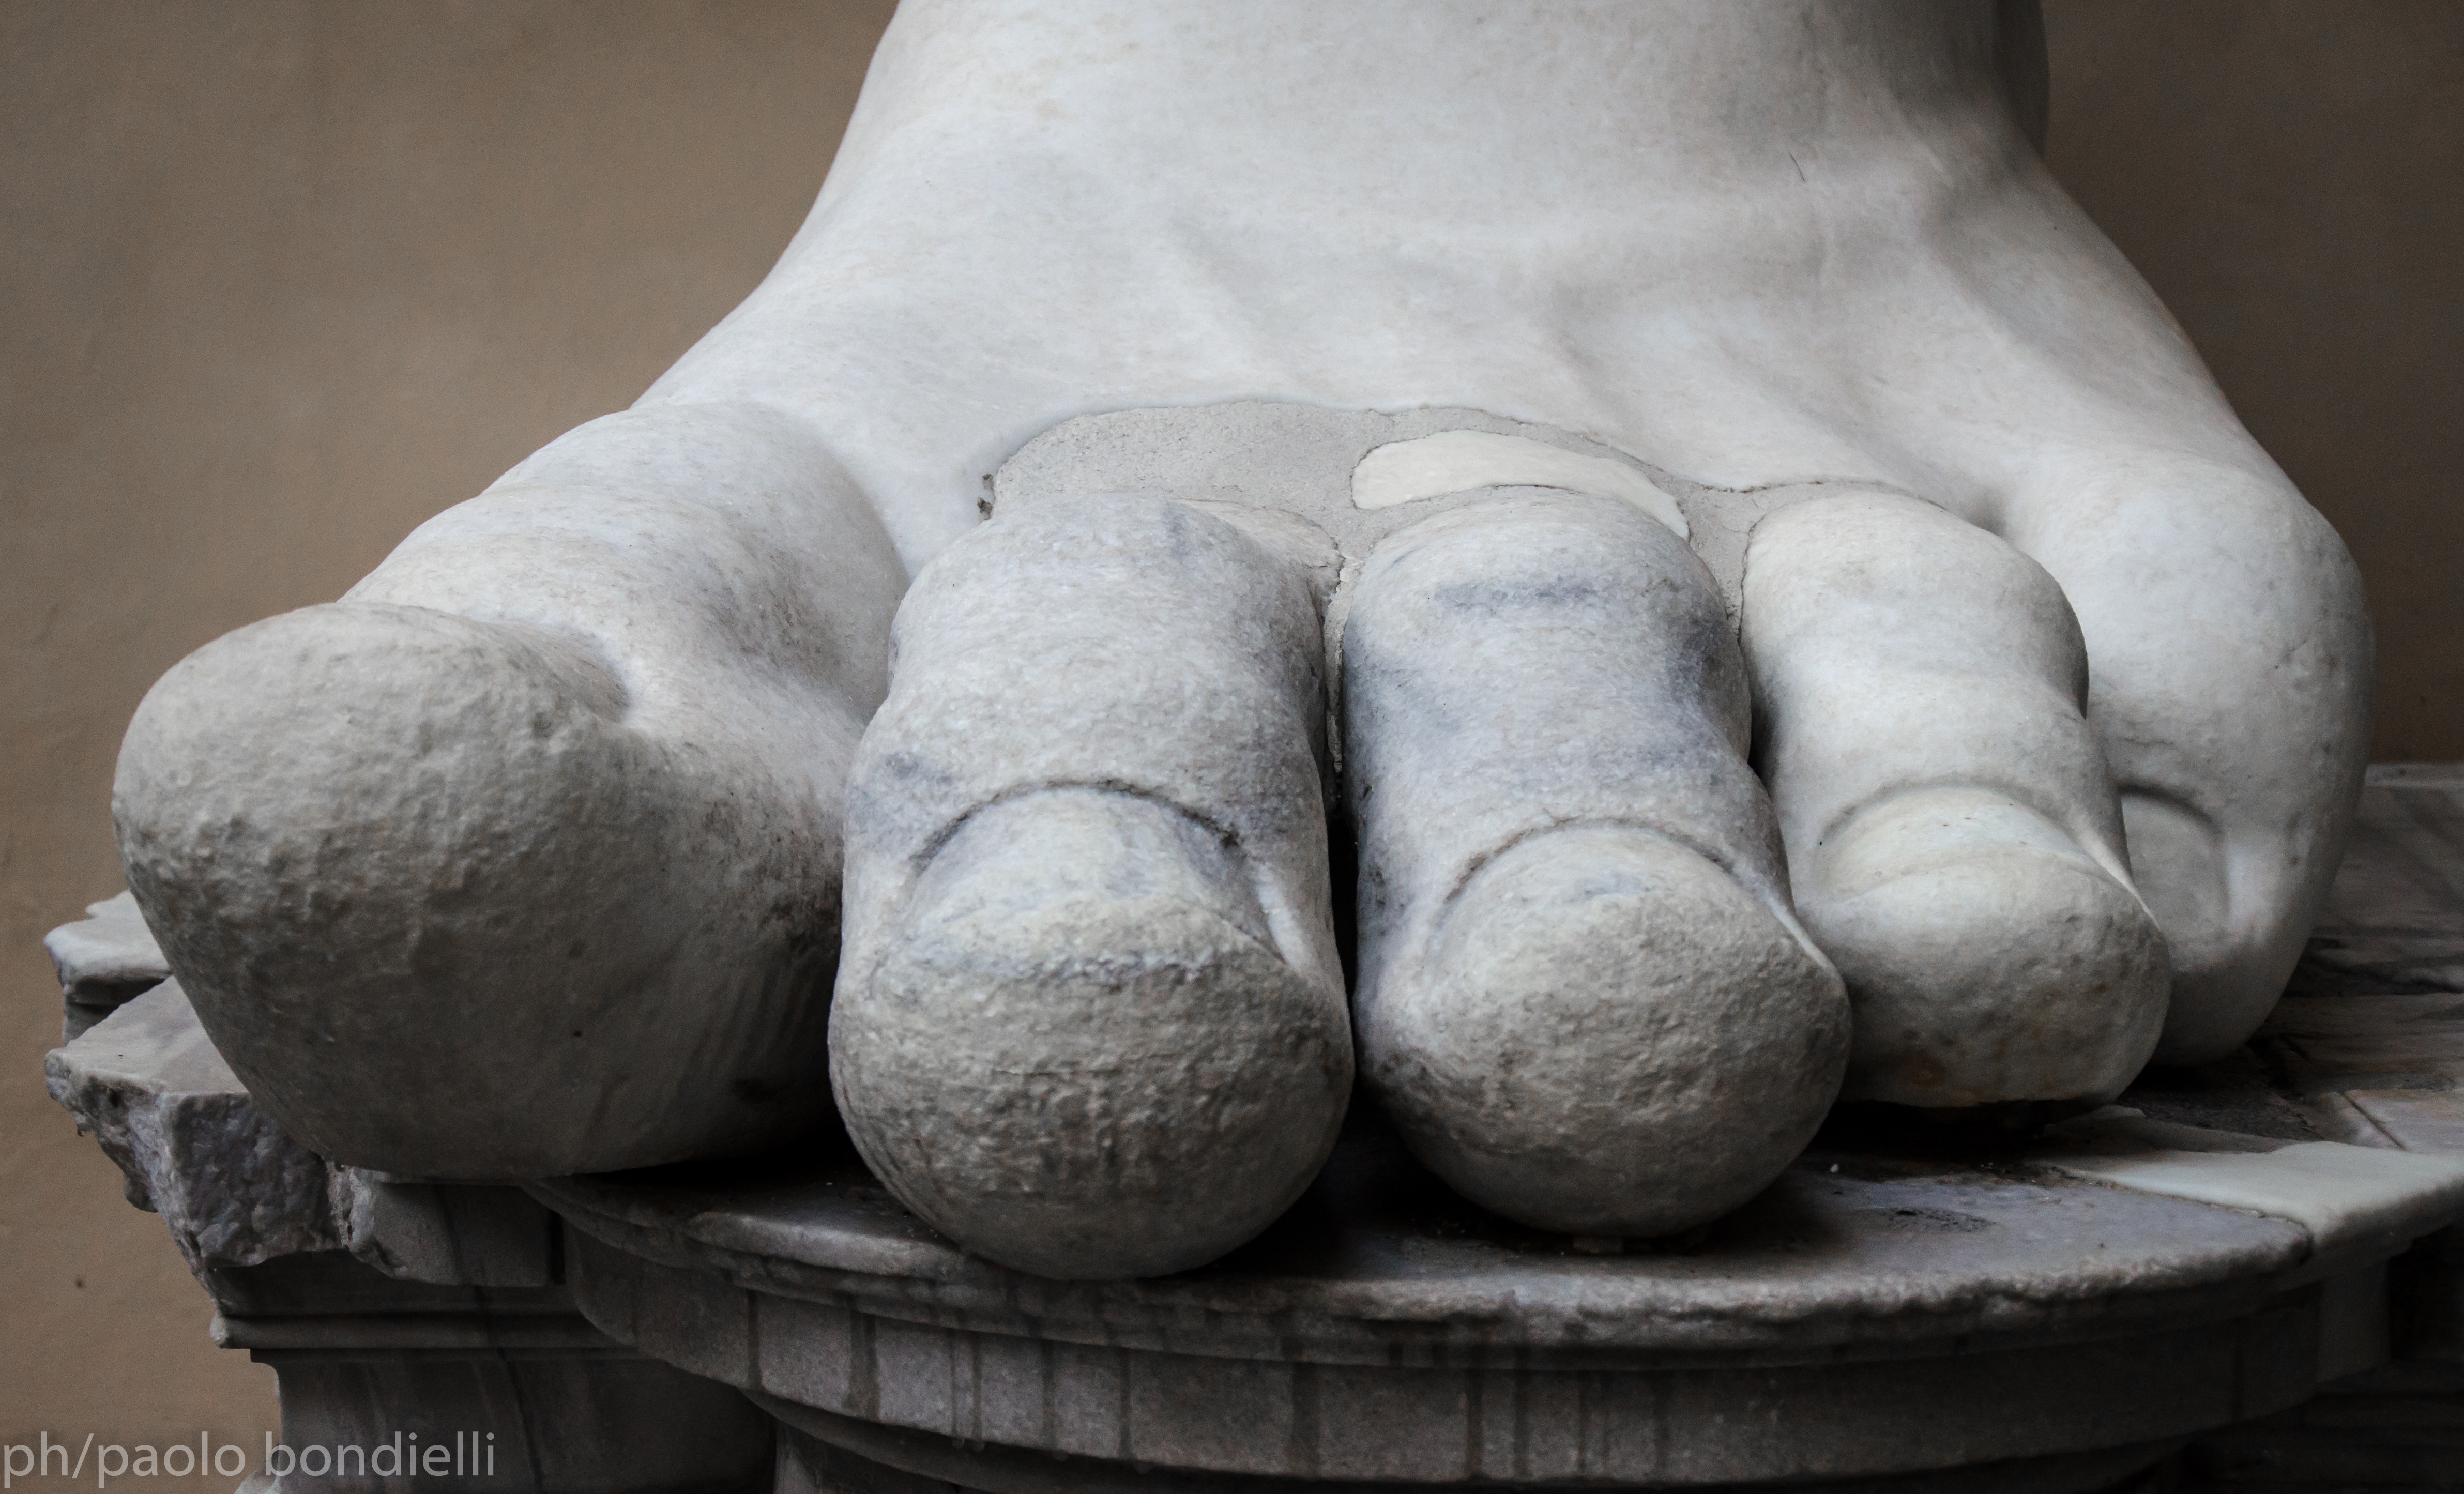 ph/Paolo Bondielli - L'enorme piede con la perfetta resa delle unghie